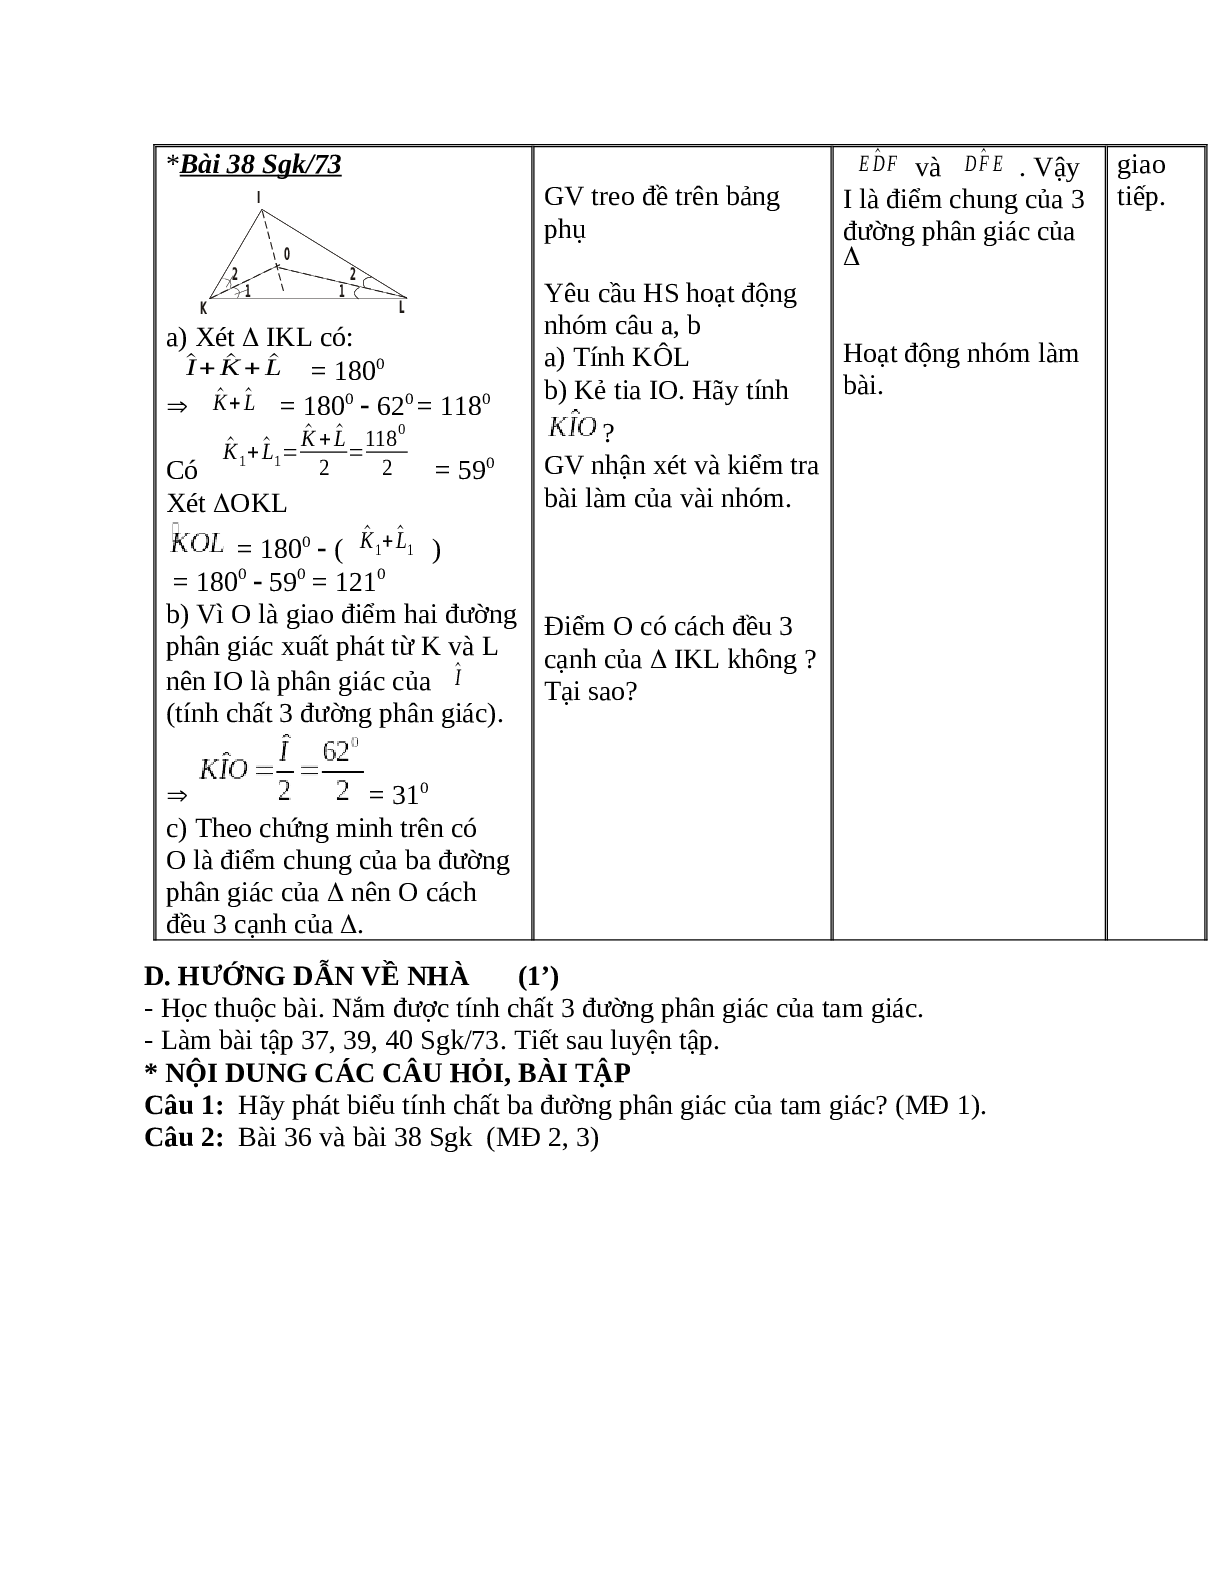 Giáo án Toán học 7 bài 6: Tính chất ba đường phân giác của tam giác hay nhất (trang 5)